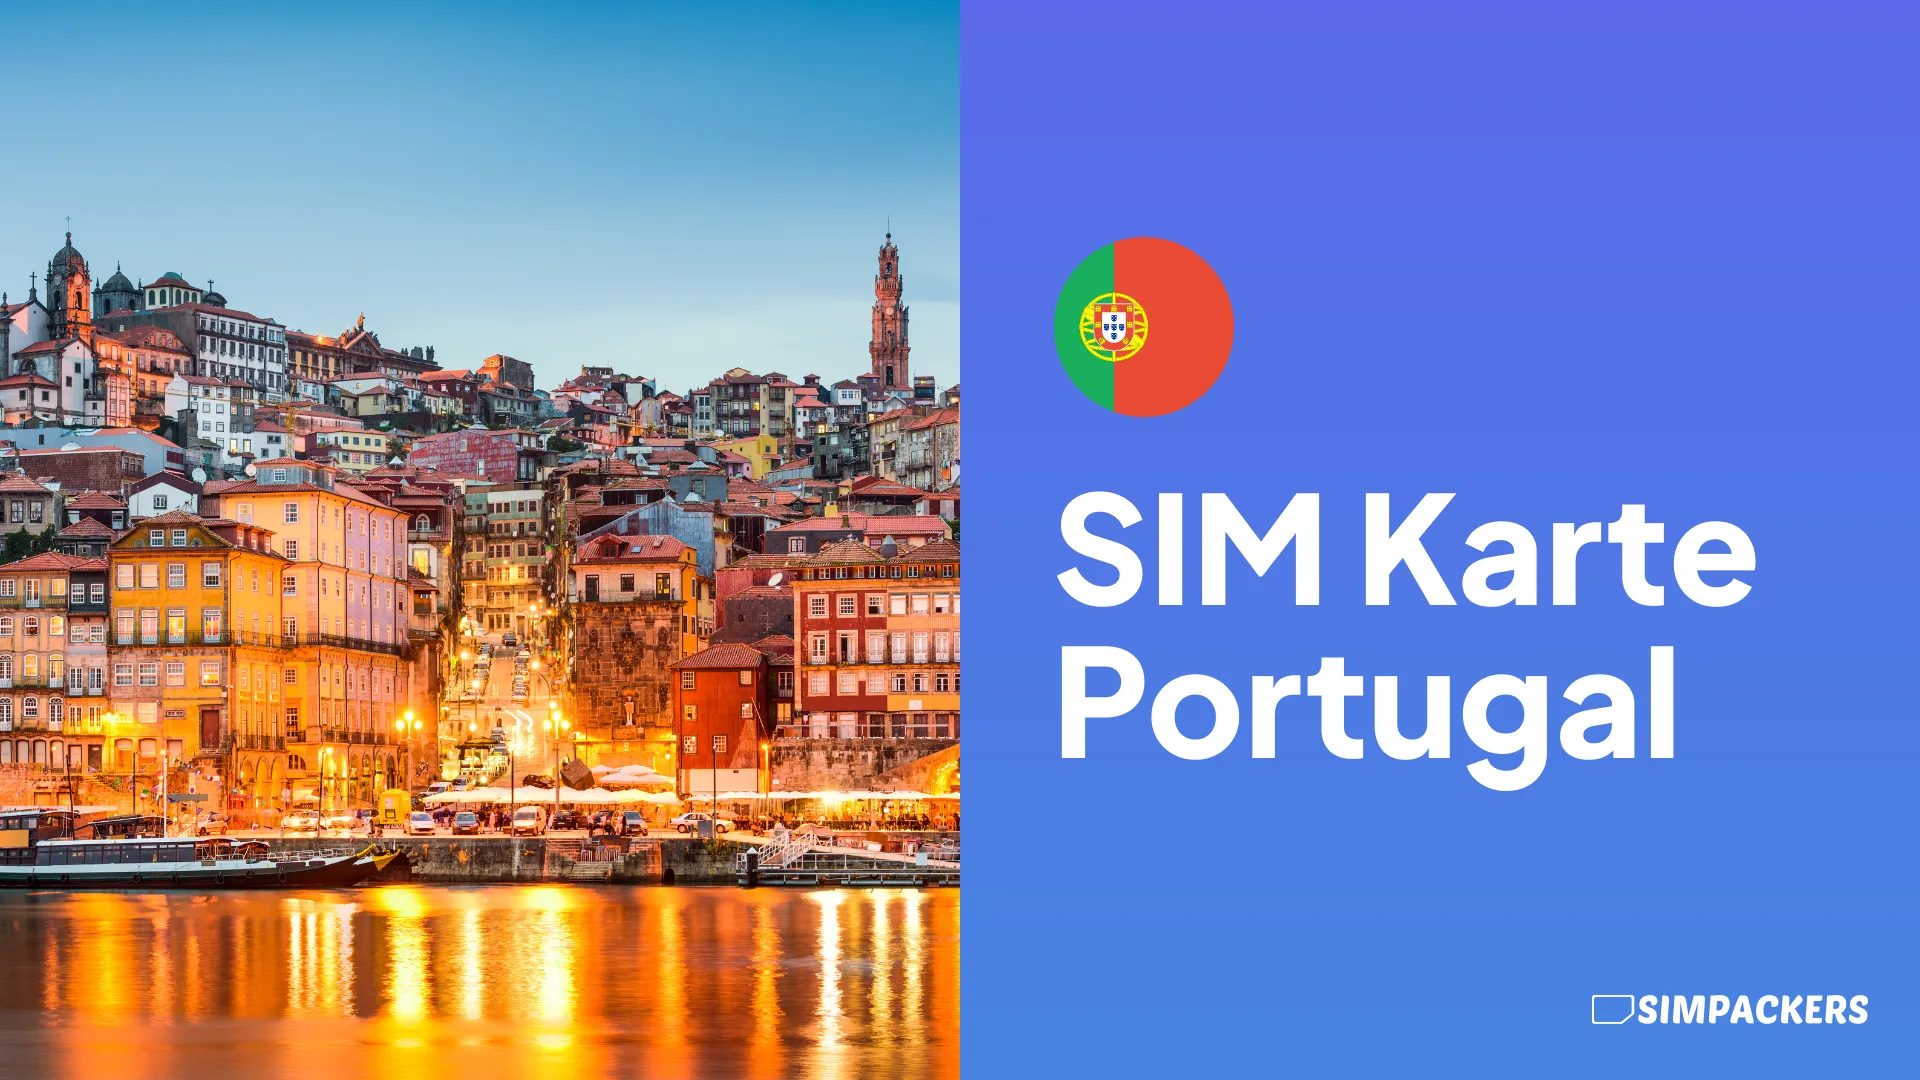 DE/FEATURED_IMAGES/sim-karte-portugal.webp